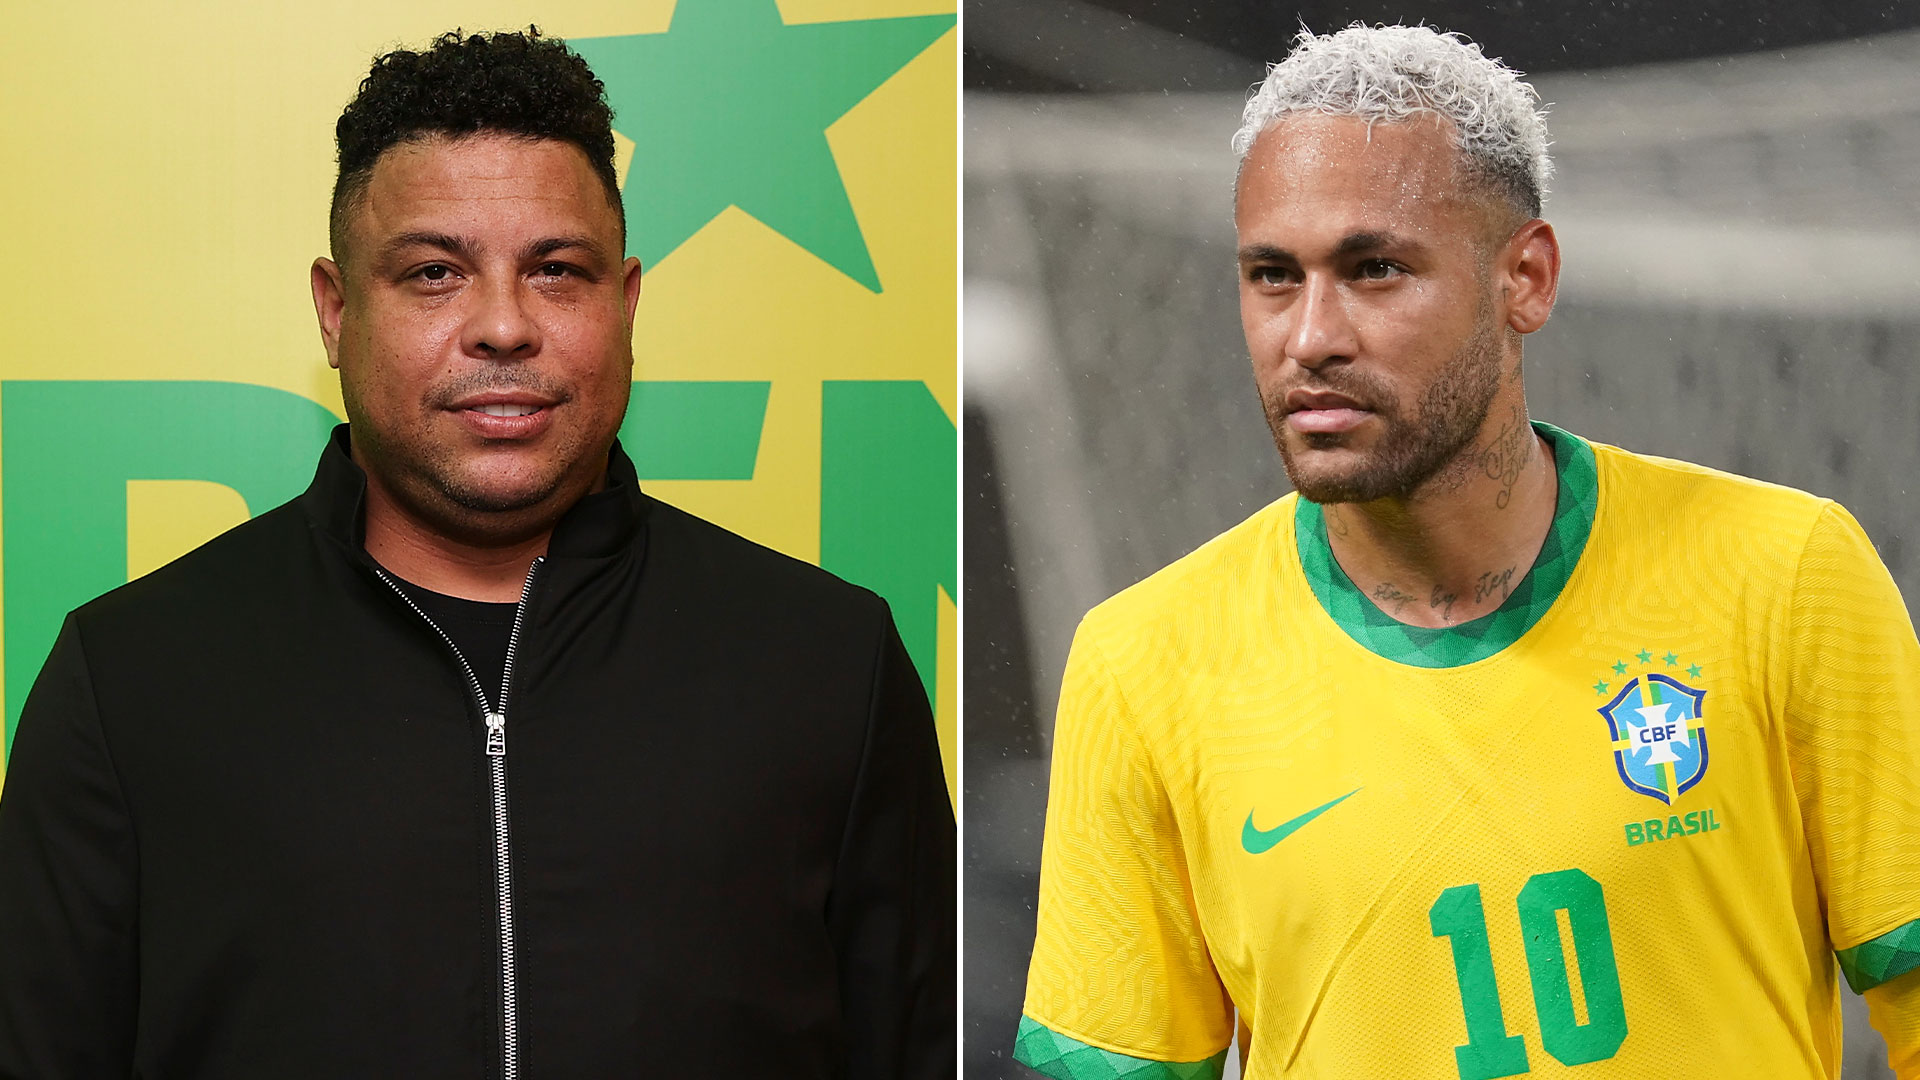 El pedido de Ronaldo Nazario a Neymar para que Brasil gane el Mundial de Qatar